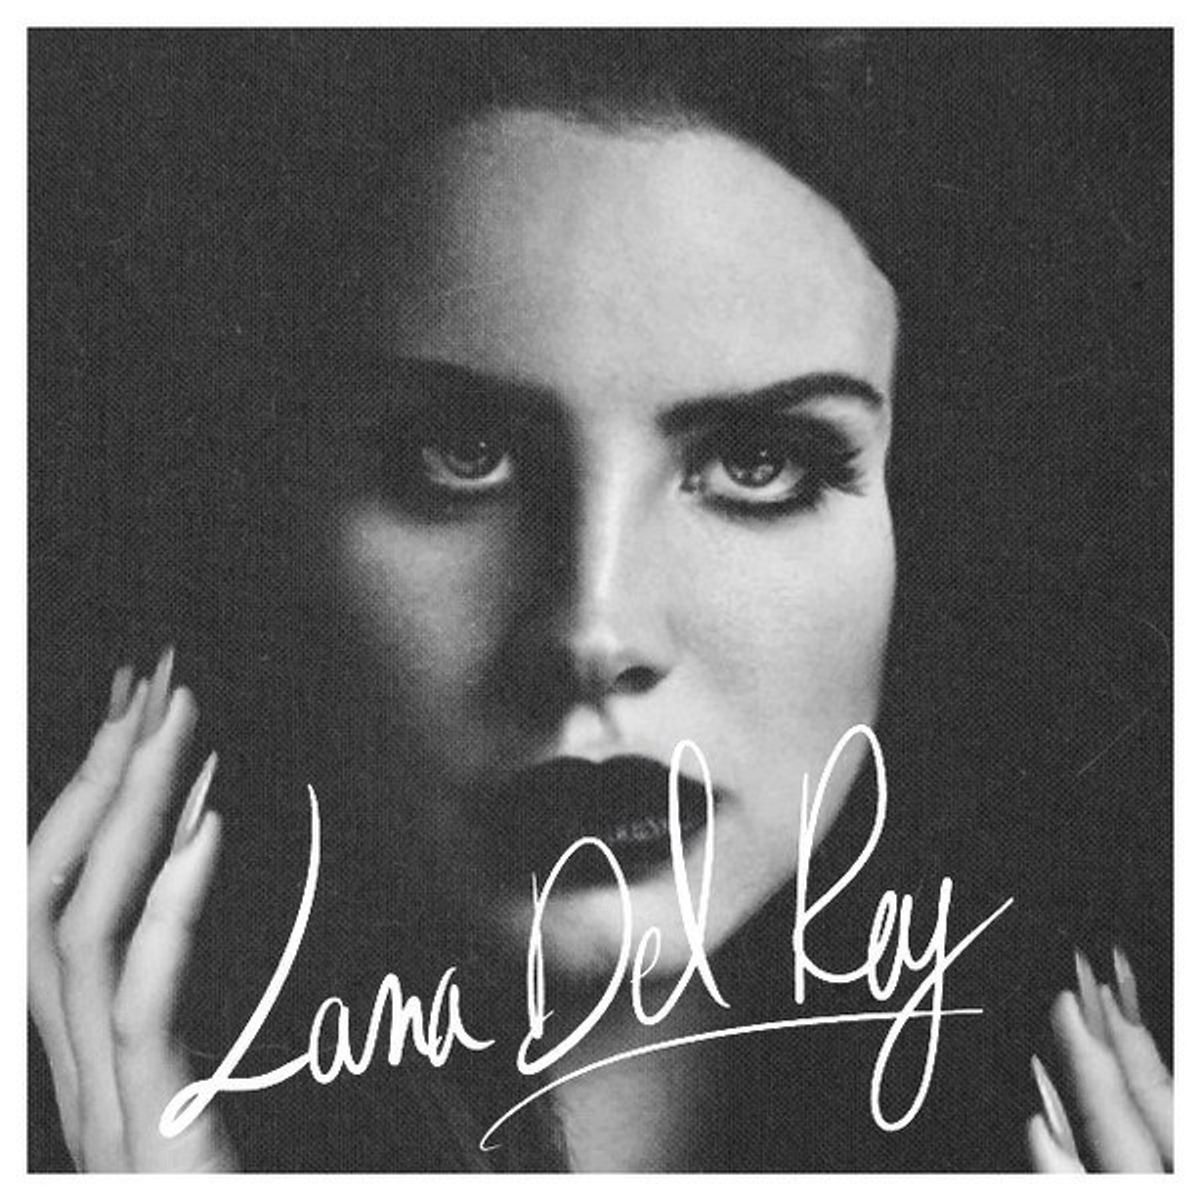 13 Instagram-Worthy Lana Del Rey Lyrics